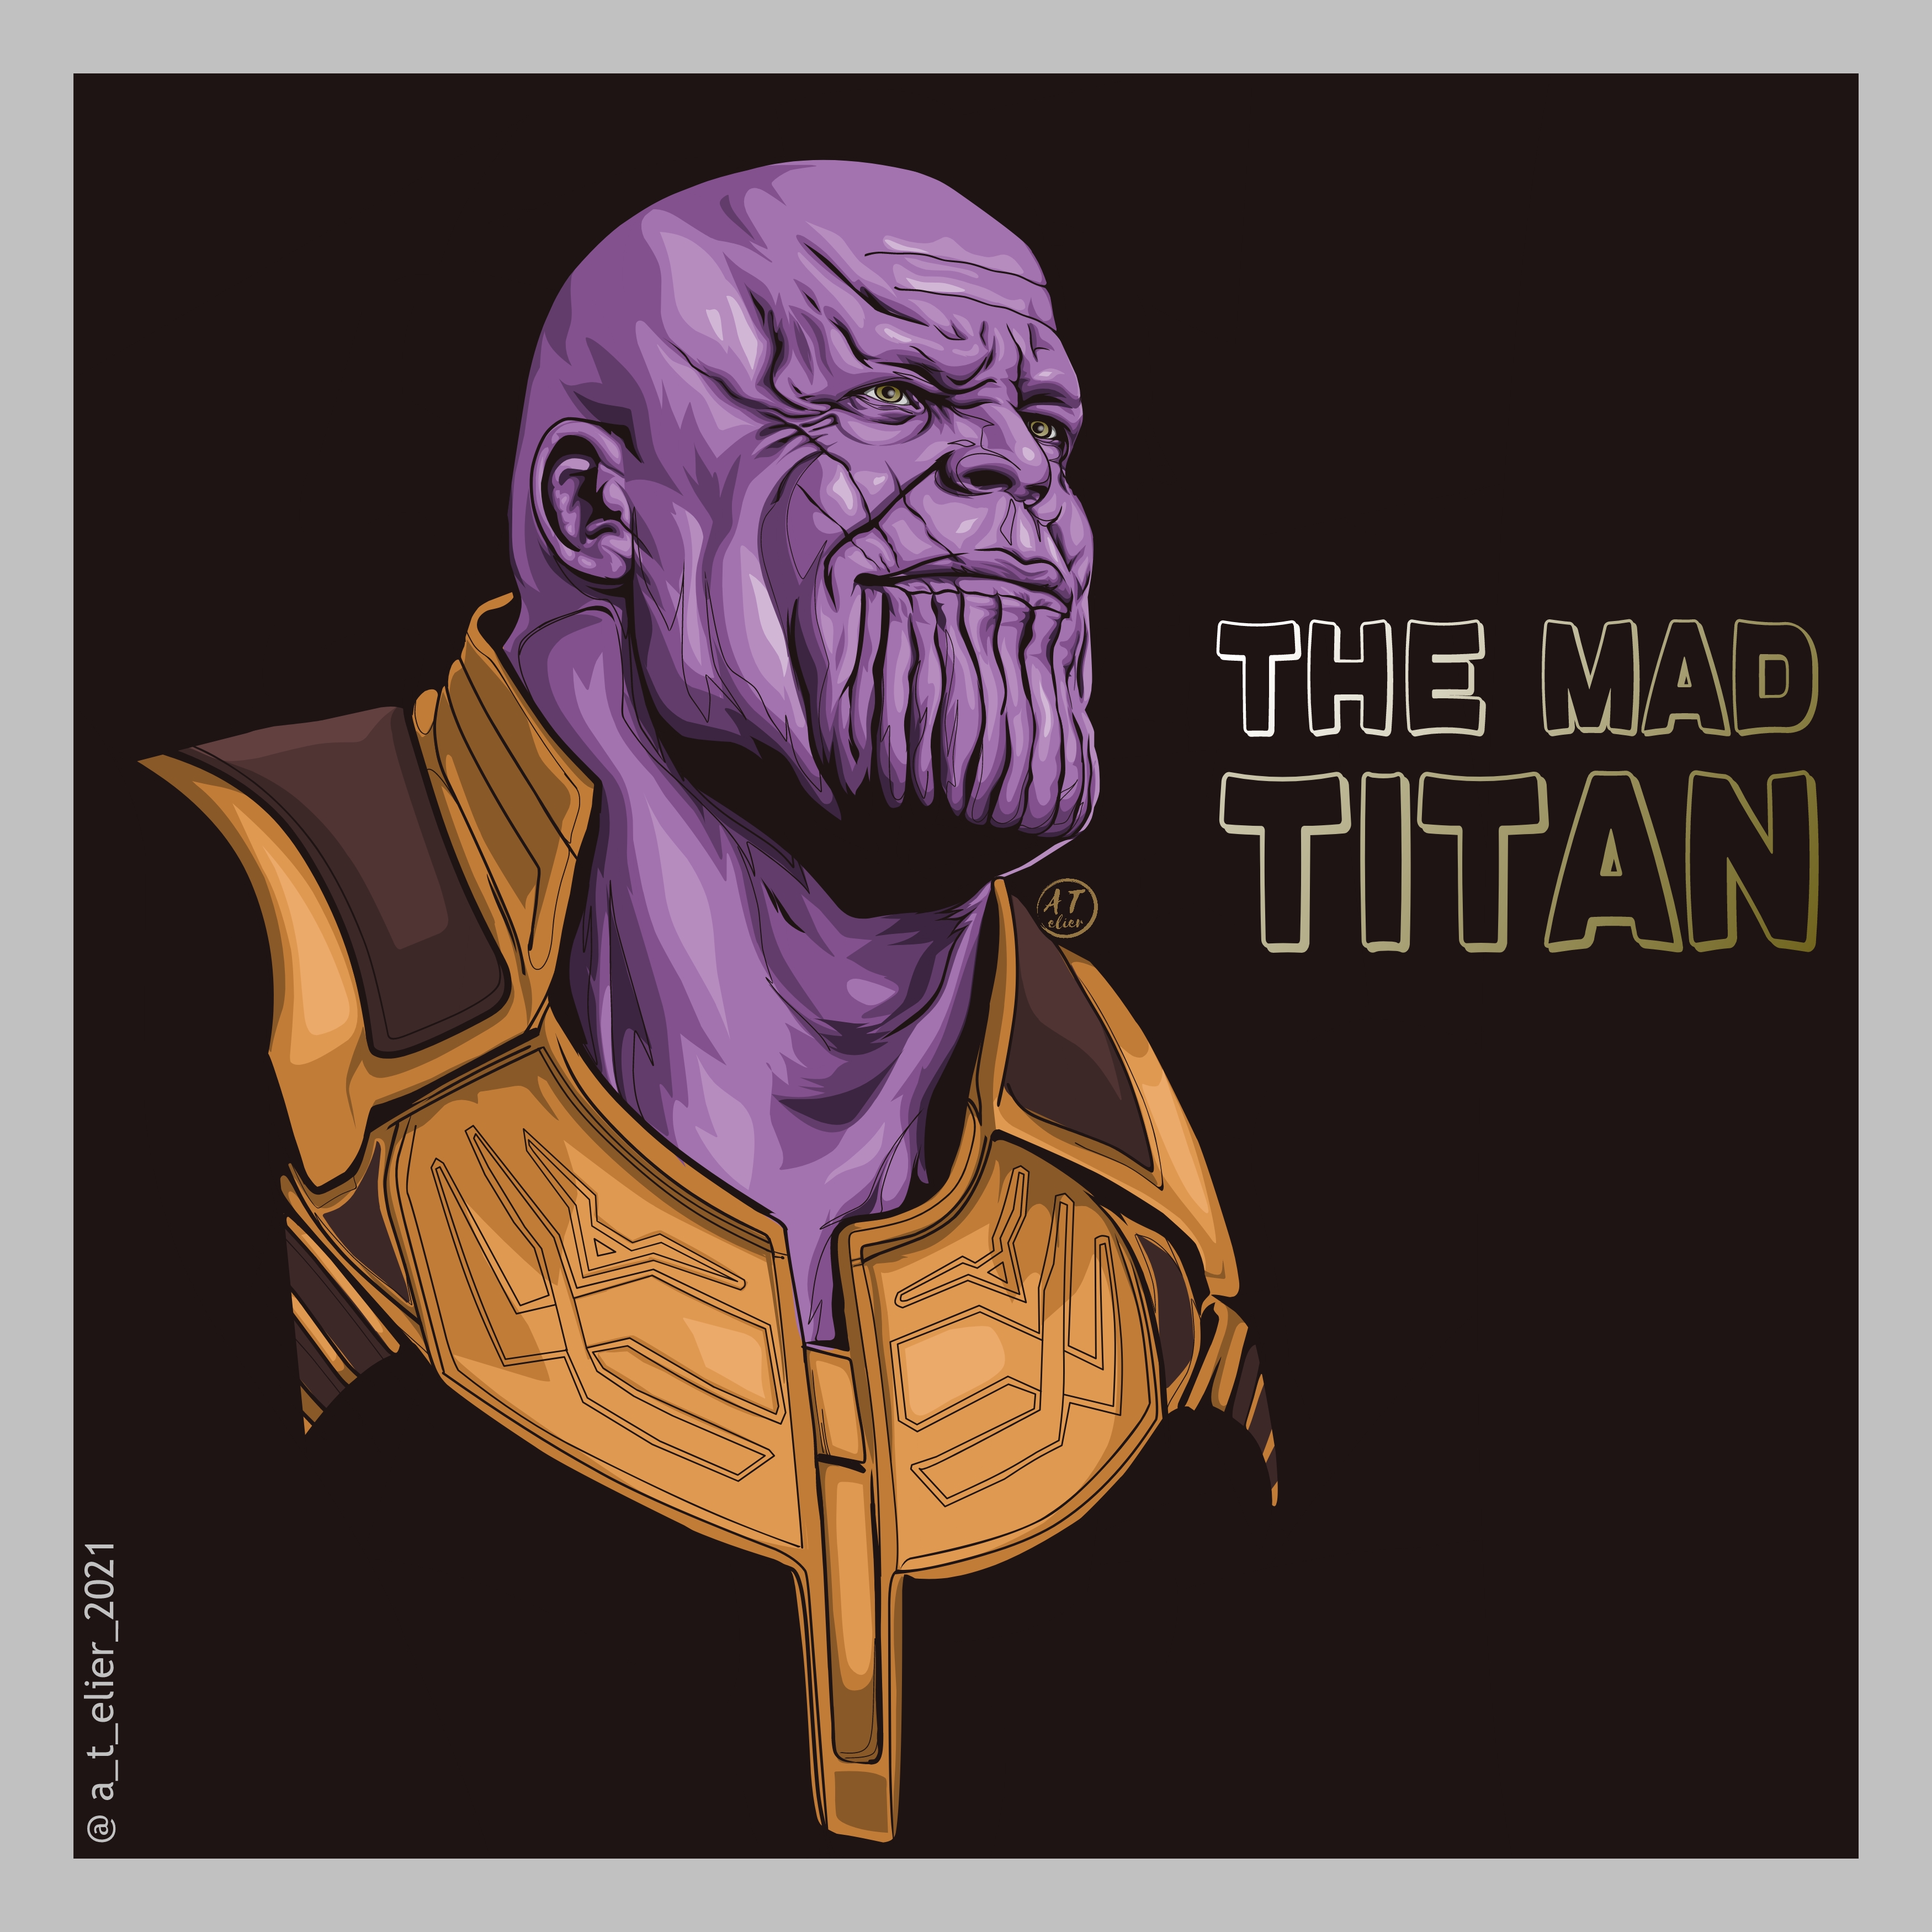 Thanos by Akshaypp89 on DeviantArt